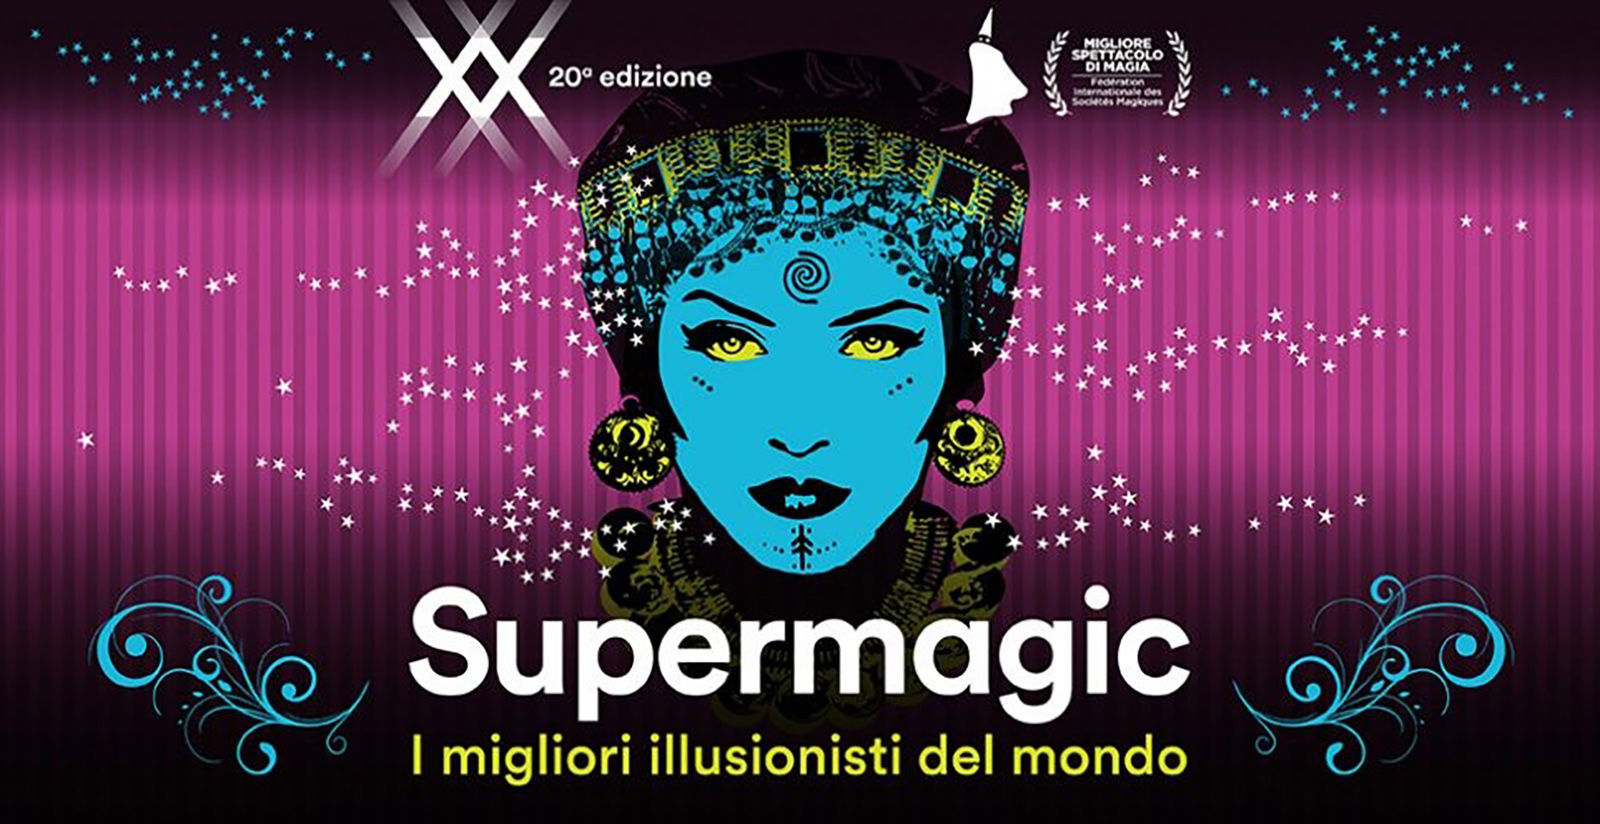 La magia prende vita a Roma con Supermagic XX 2